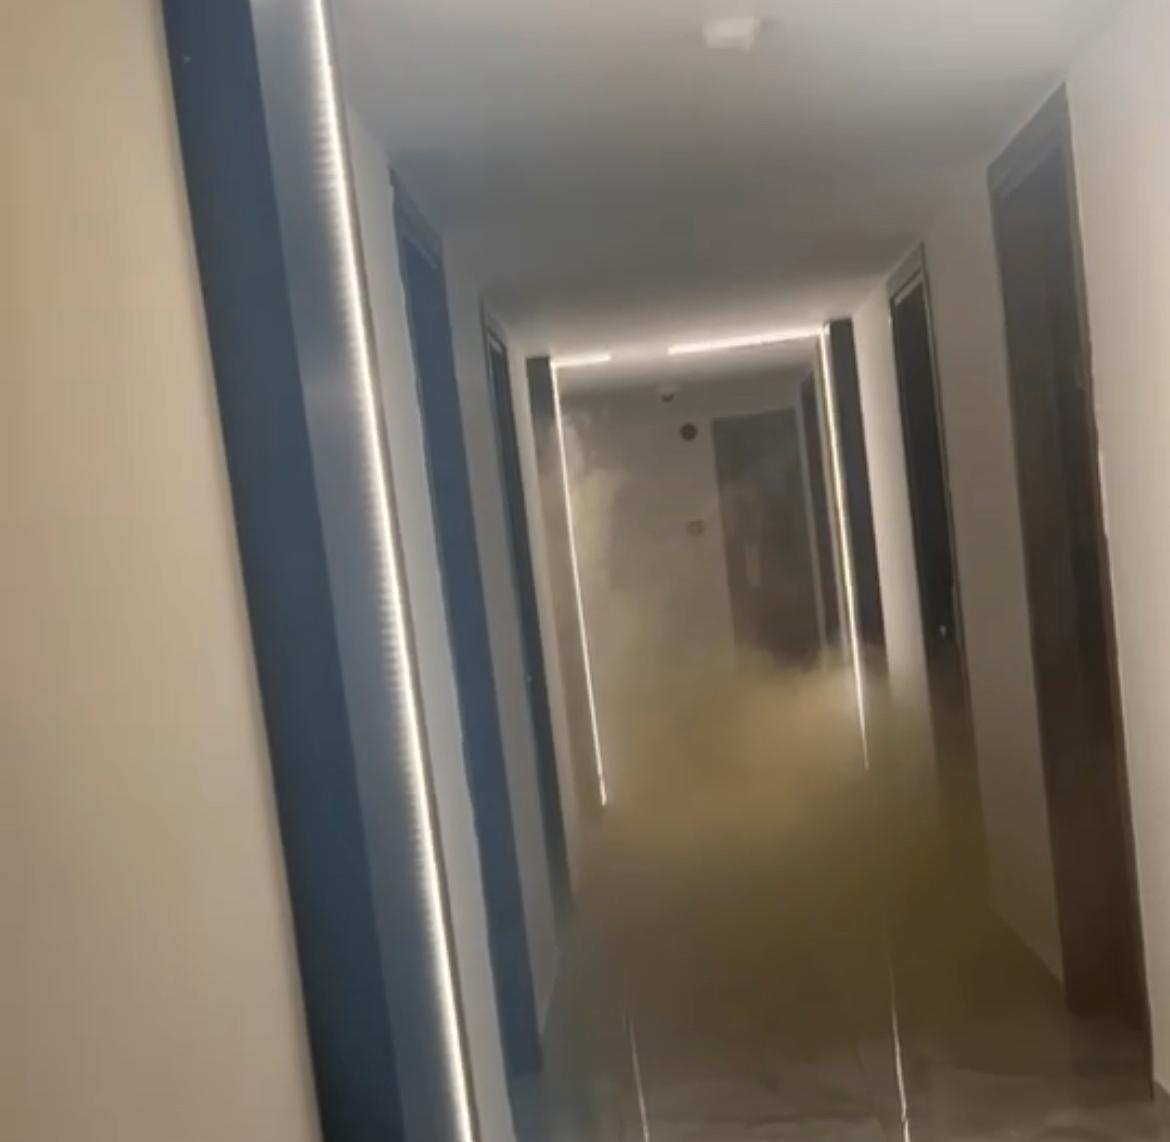 Rök spred sig i hotellets korridorer medan gäster låg och sov på sina rum. 